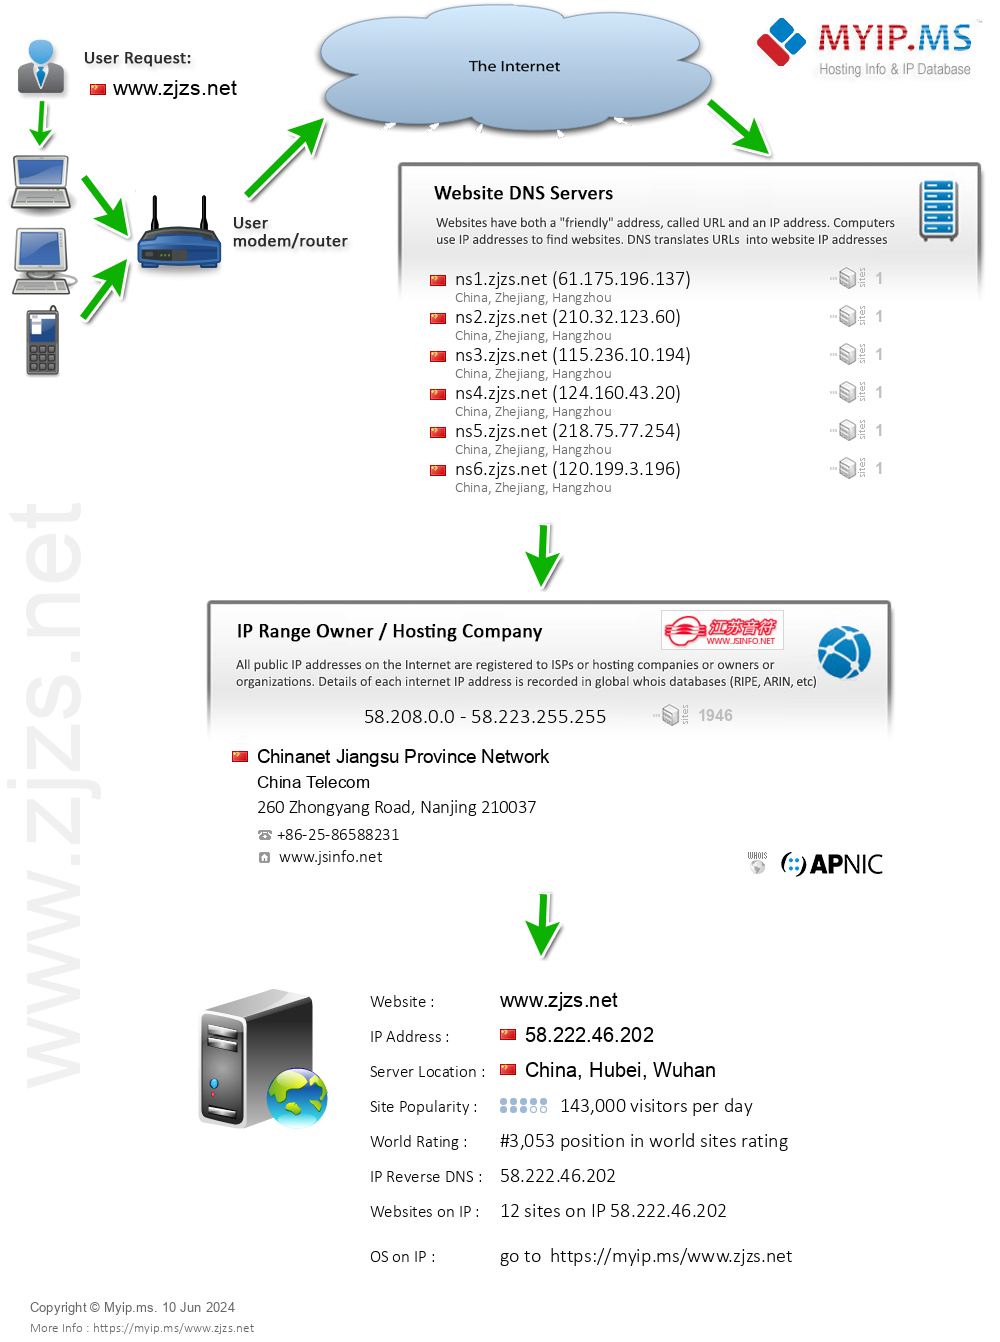 Zjzs.net - Website Hosting Visual IP Diagram